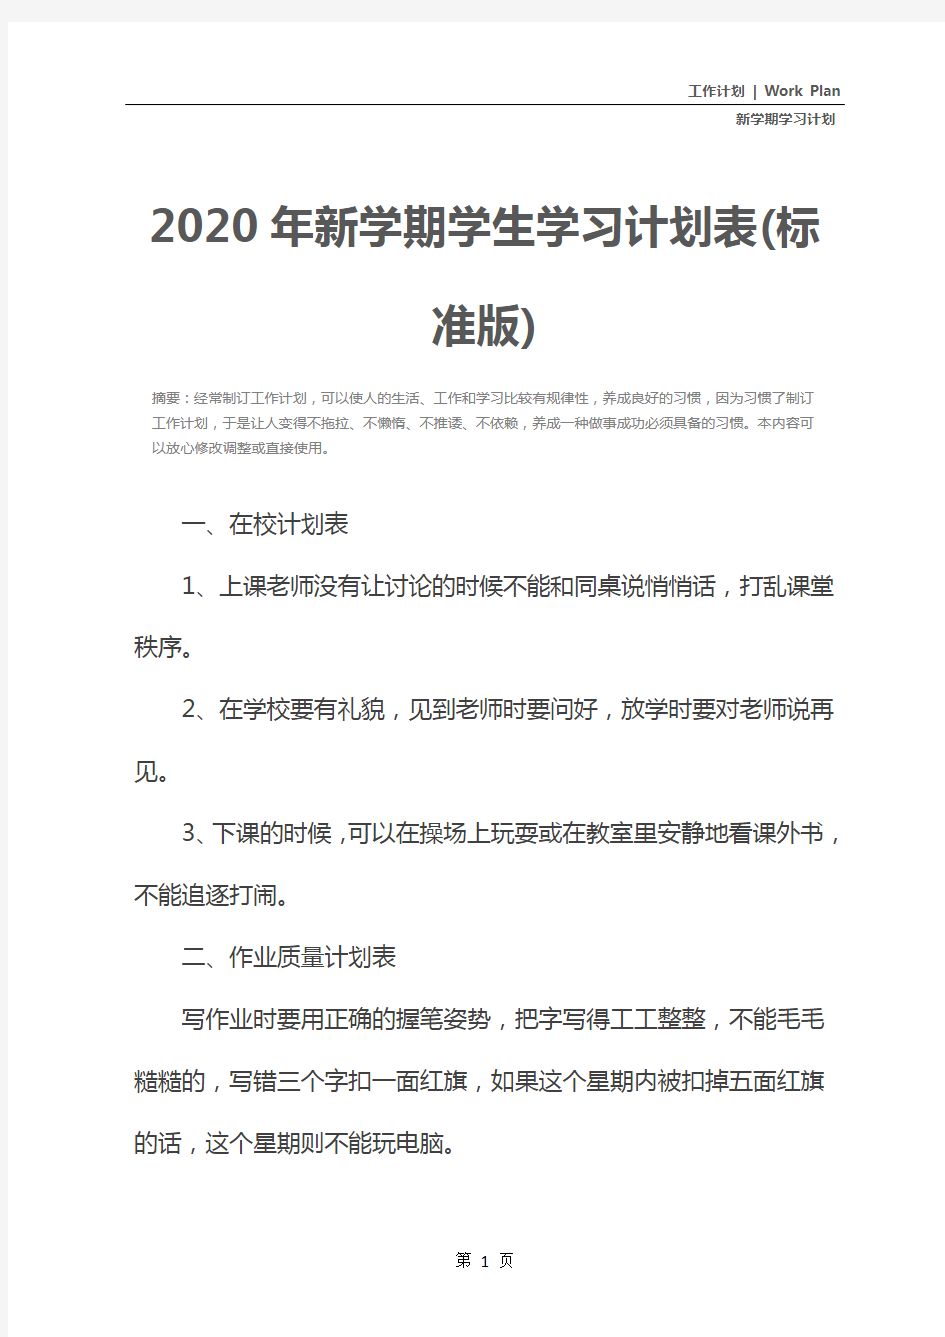 2020年新学期学生学习计划表(标准版)